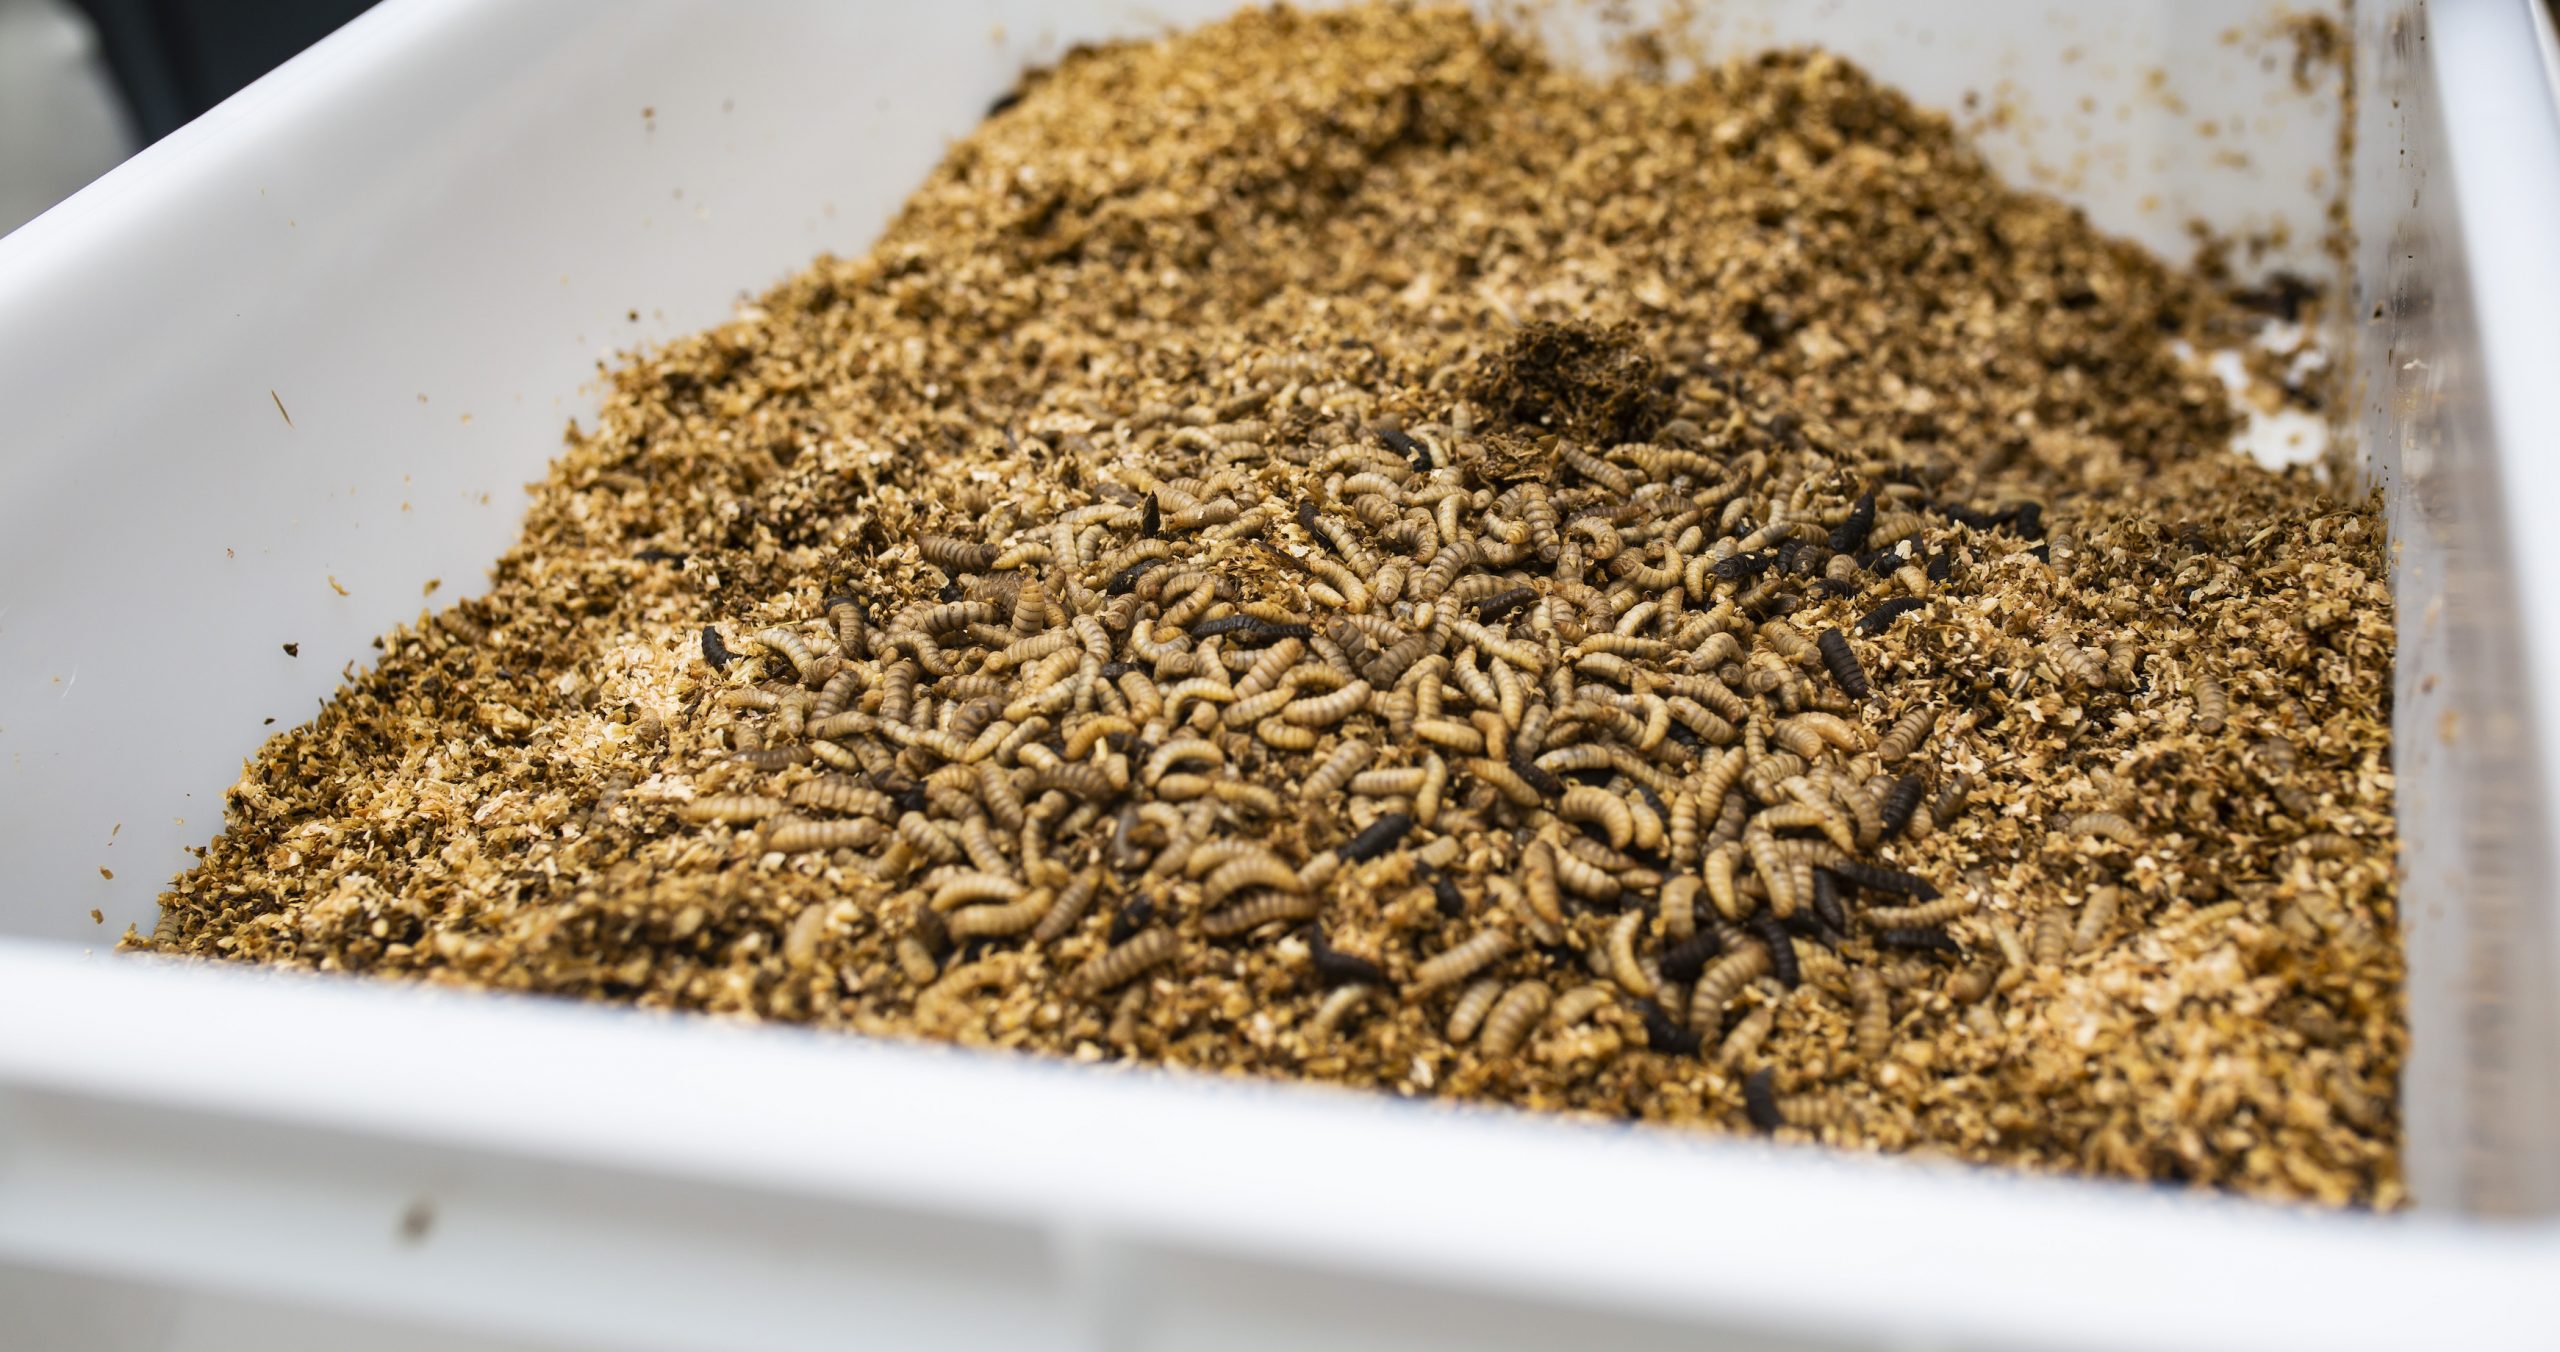 La vida de las larvas de moscas soldado negra: de comer biorresiduos al piensode los animales